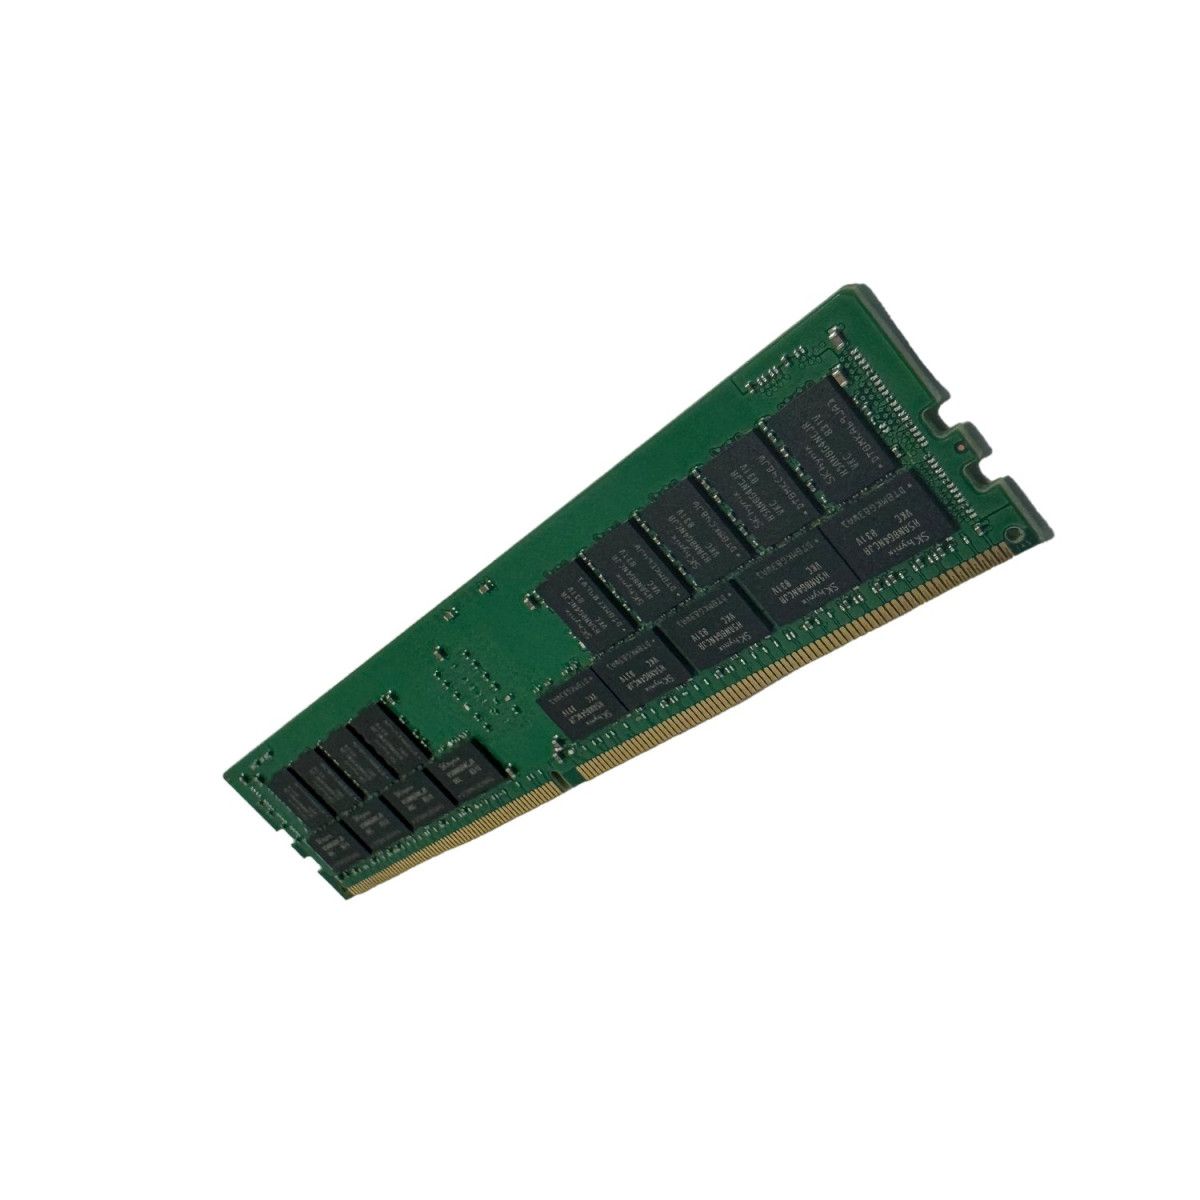 862974-B21-MS -NO- Memstar 1x 16GB DDR4-2400 UDIMM non caricato - Mem-Star Memoria compatibile OEM 1 - Memstar